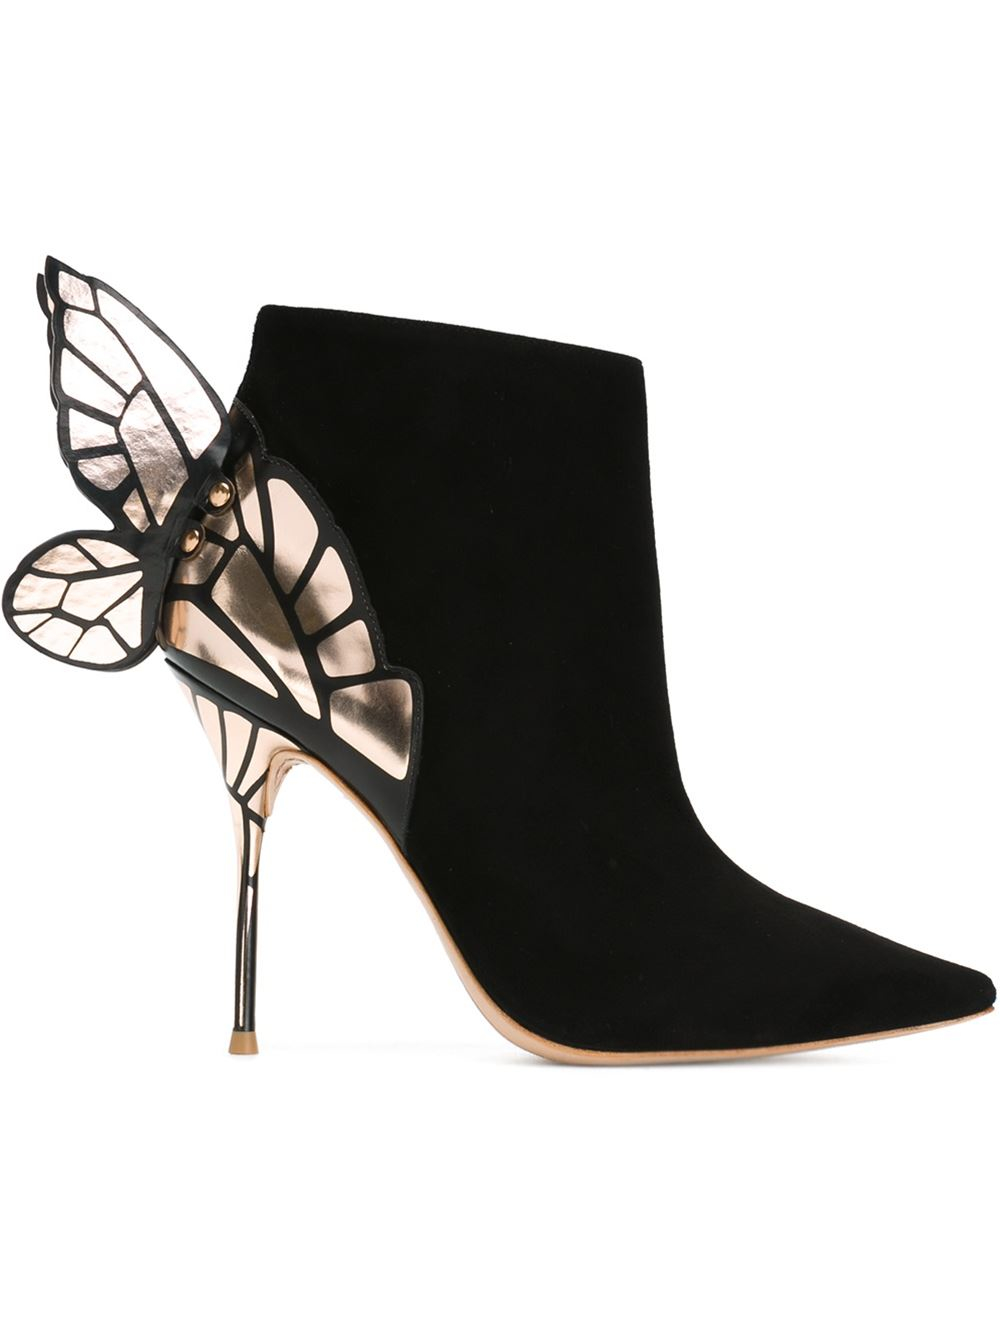 Lyst - Sophia Webster Chiara Butterfly Boots in Black